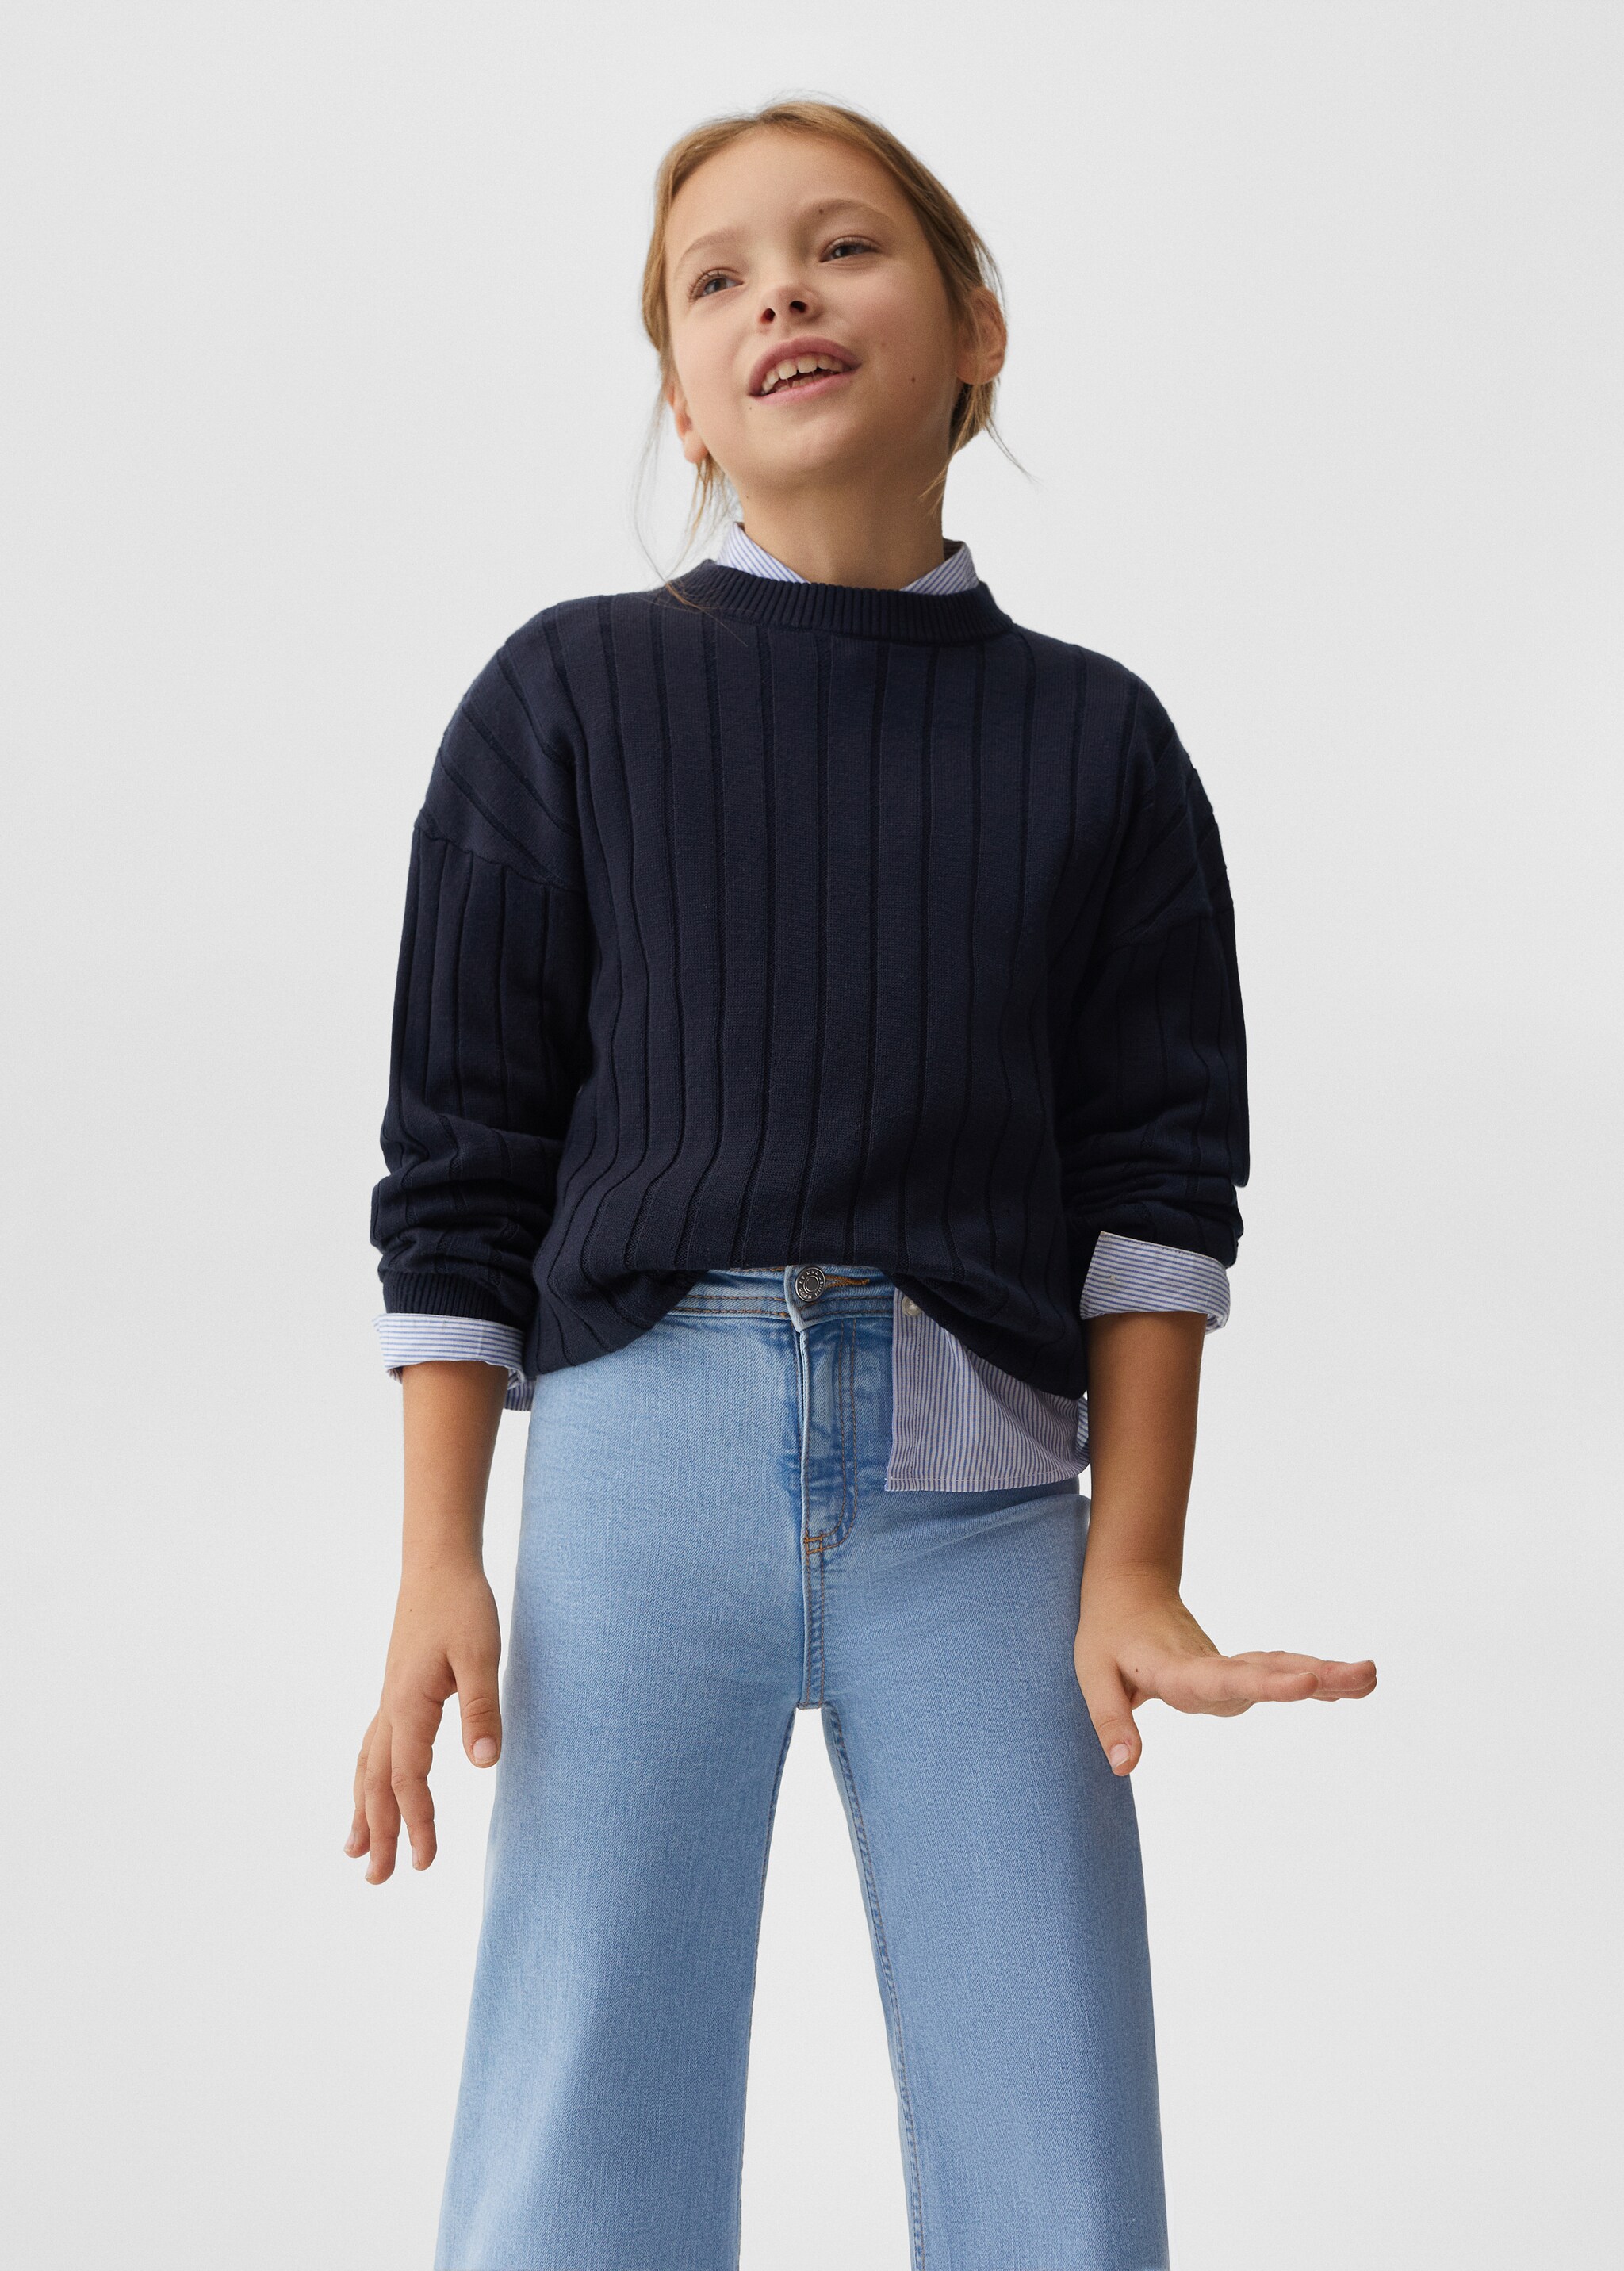 Culotte-Jeans mit hohem Bund - Mittlere Ansicht